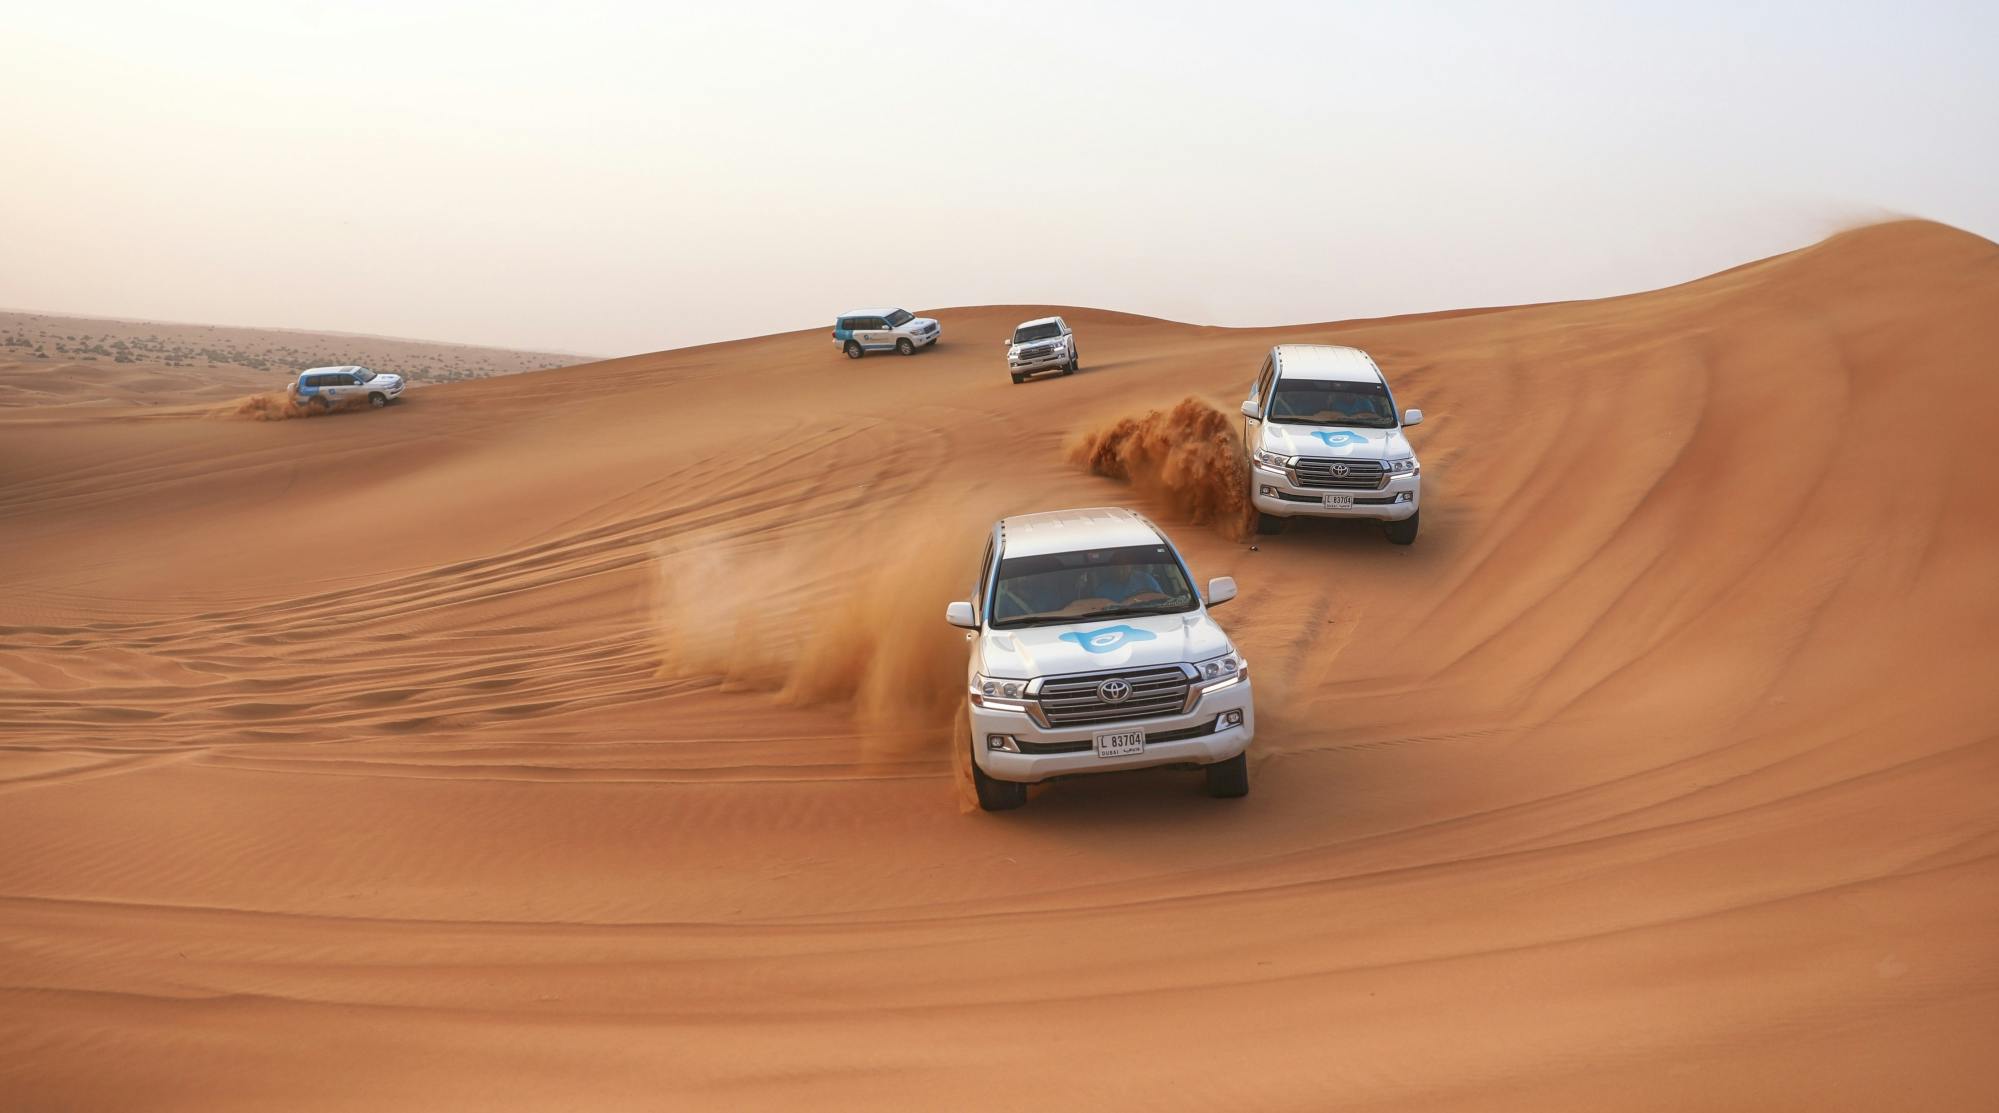 Safari matinal dans le désert de Dubaï avec dune bashing, sandboard, balade à dos de chameau